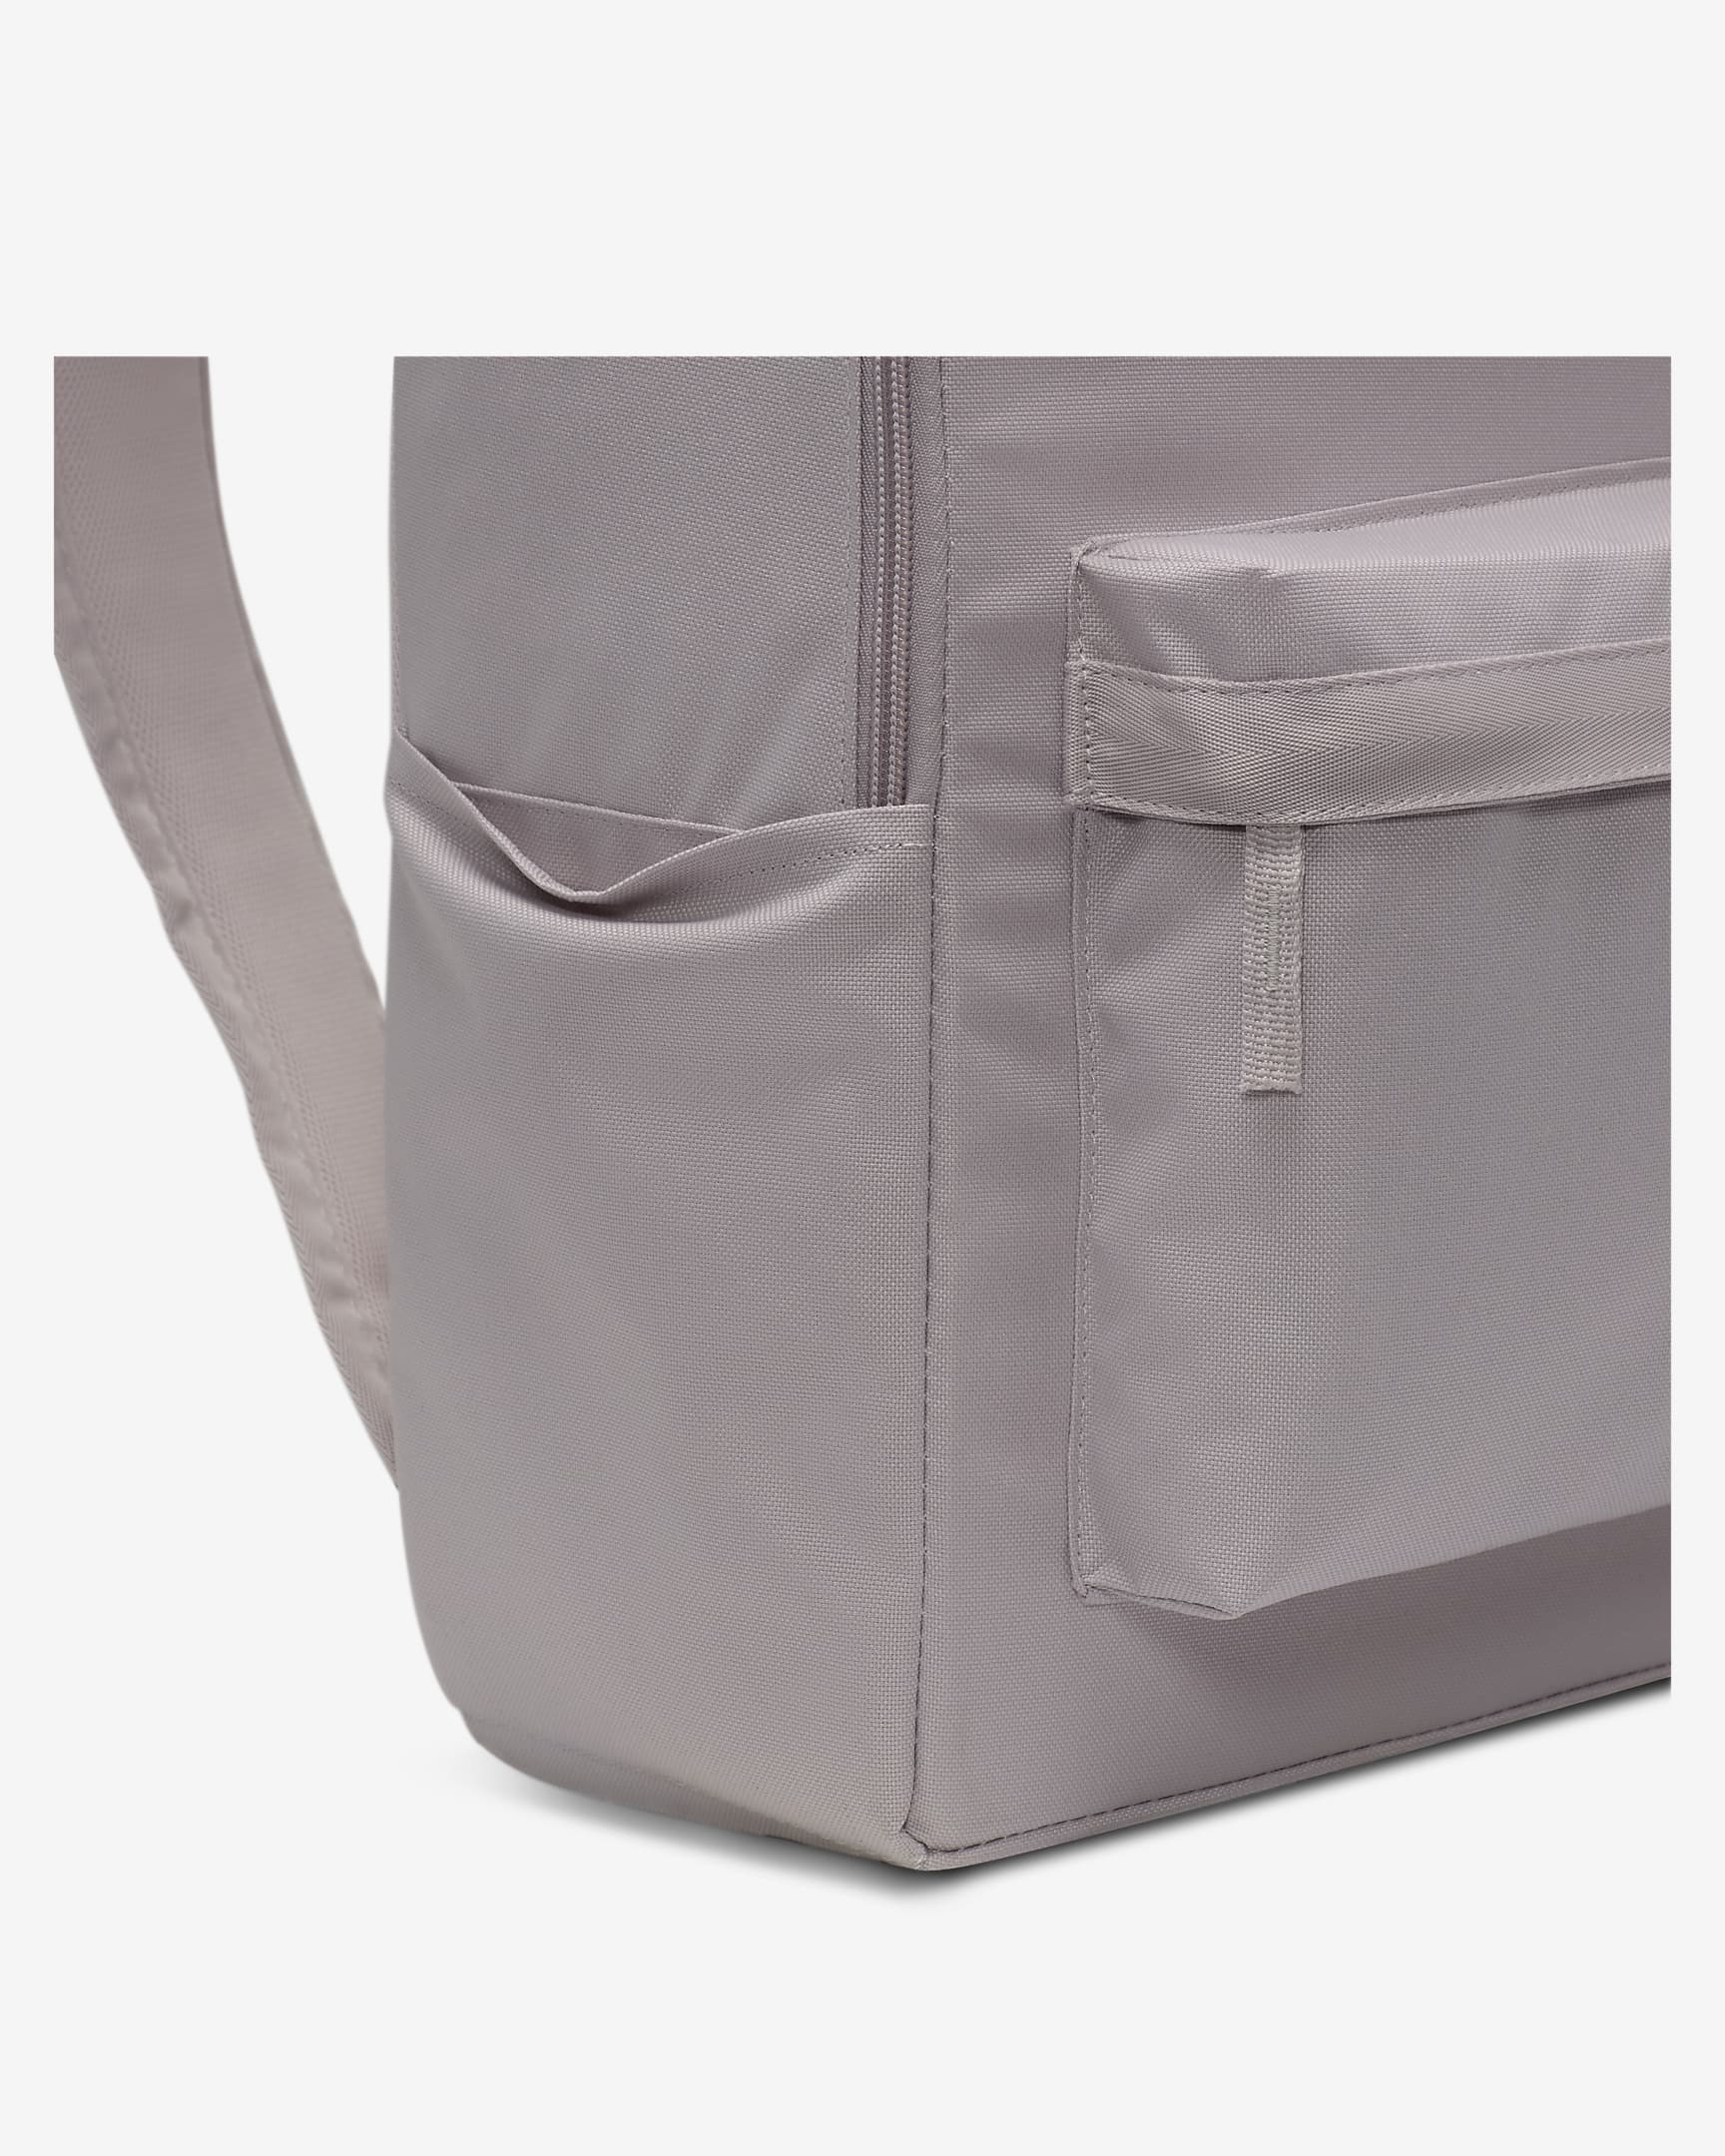 Nike Heritage Backpack (25L) - Platinum Violet/Platinum Violet/Summit White